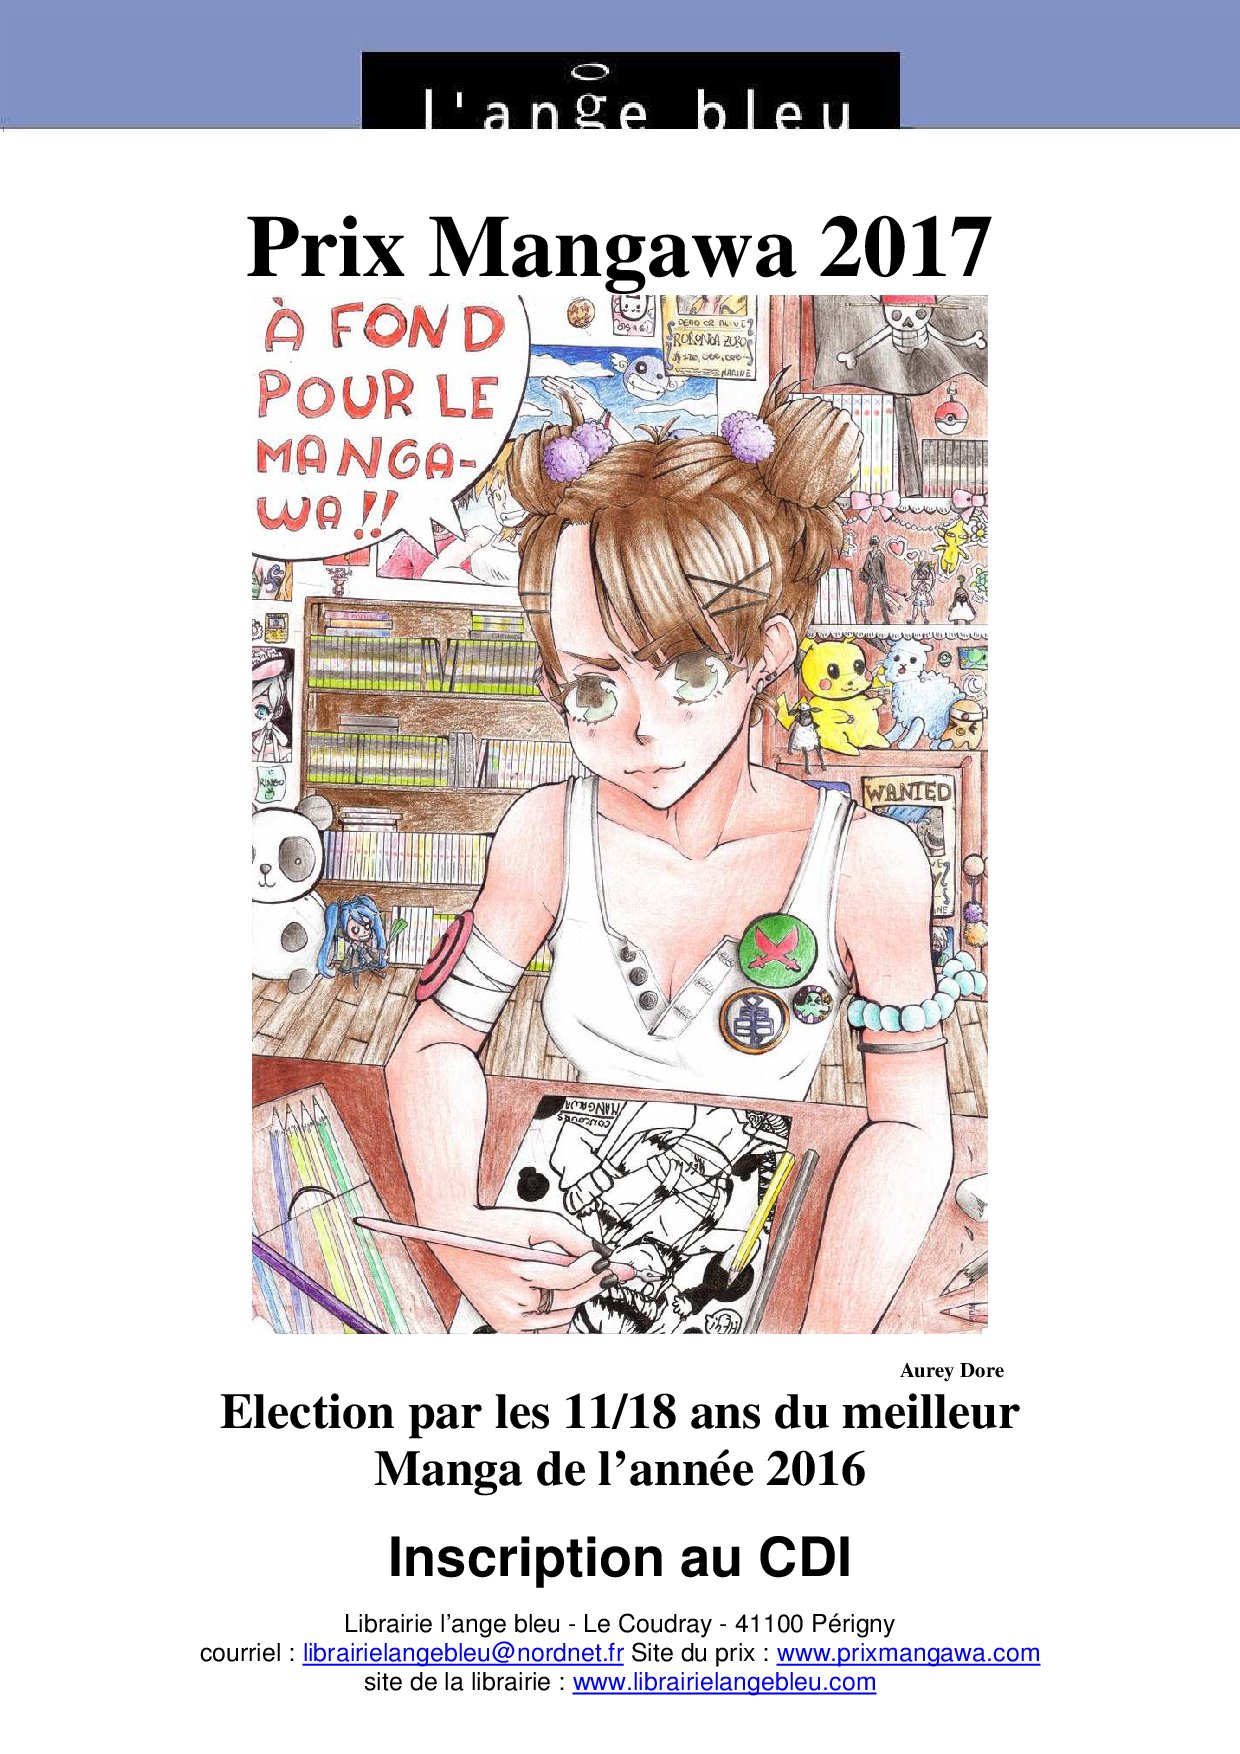 Concours De Dessin Mangawa 2017 Créez Laffiche De 2018 Cdi Infos Pierre Et Marie Curie 6832